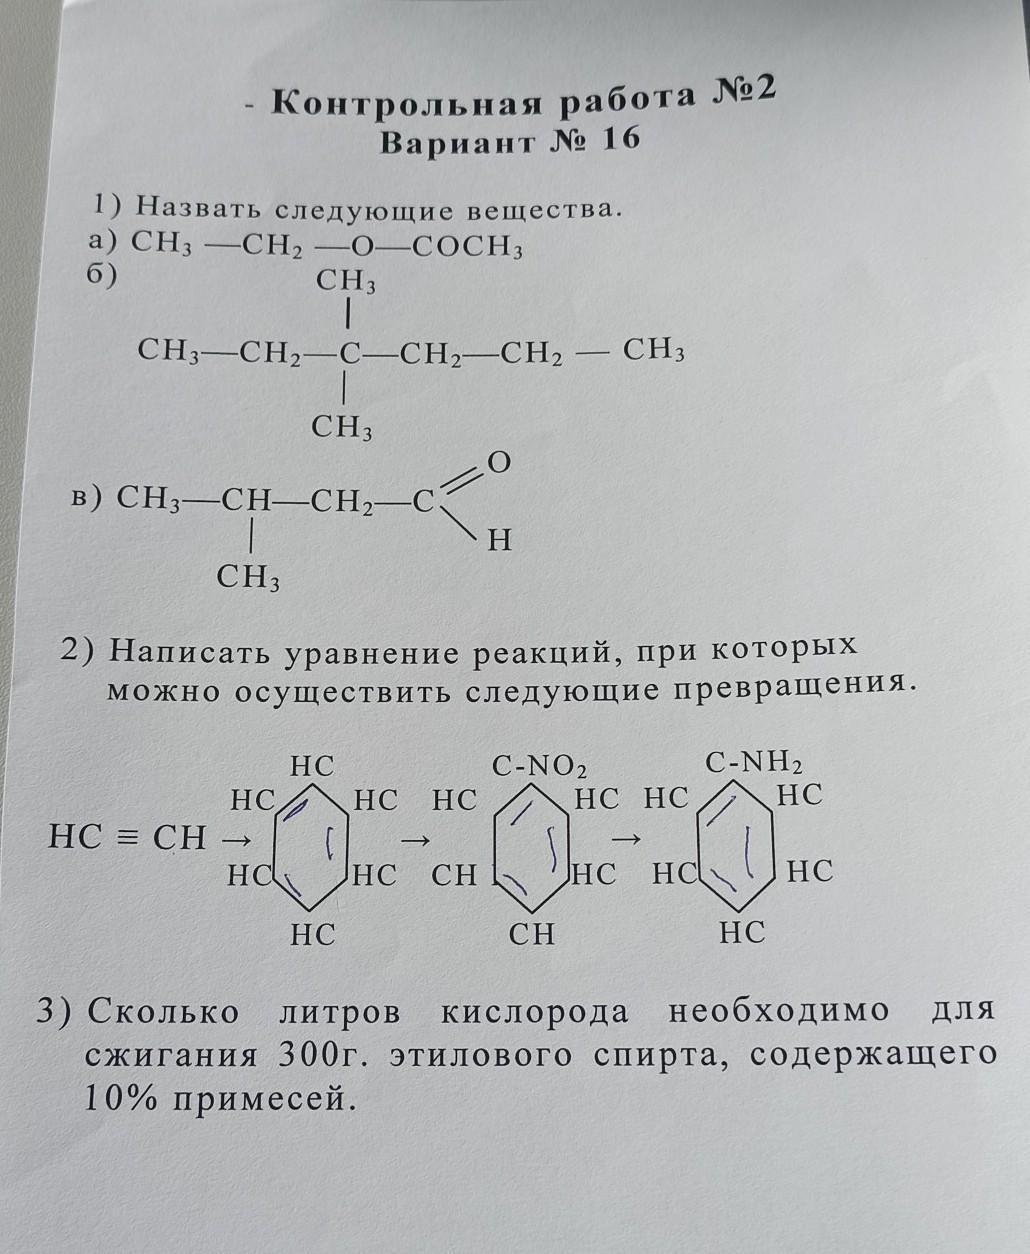 Назовите вещество x. Ch3 - СН = СН - ch3. Зовите следующие соединение ch3-ch2-ch3. C6h11–Ch=сh2. Ch3-СН(сн3)-Ch(ch3)-ch3.